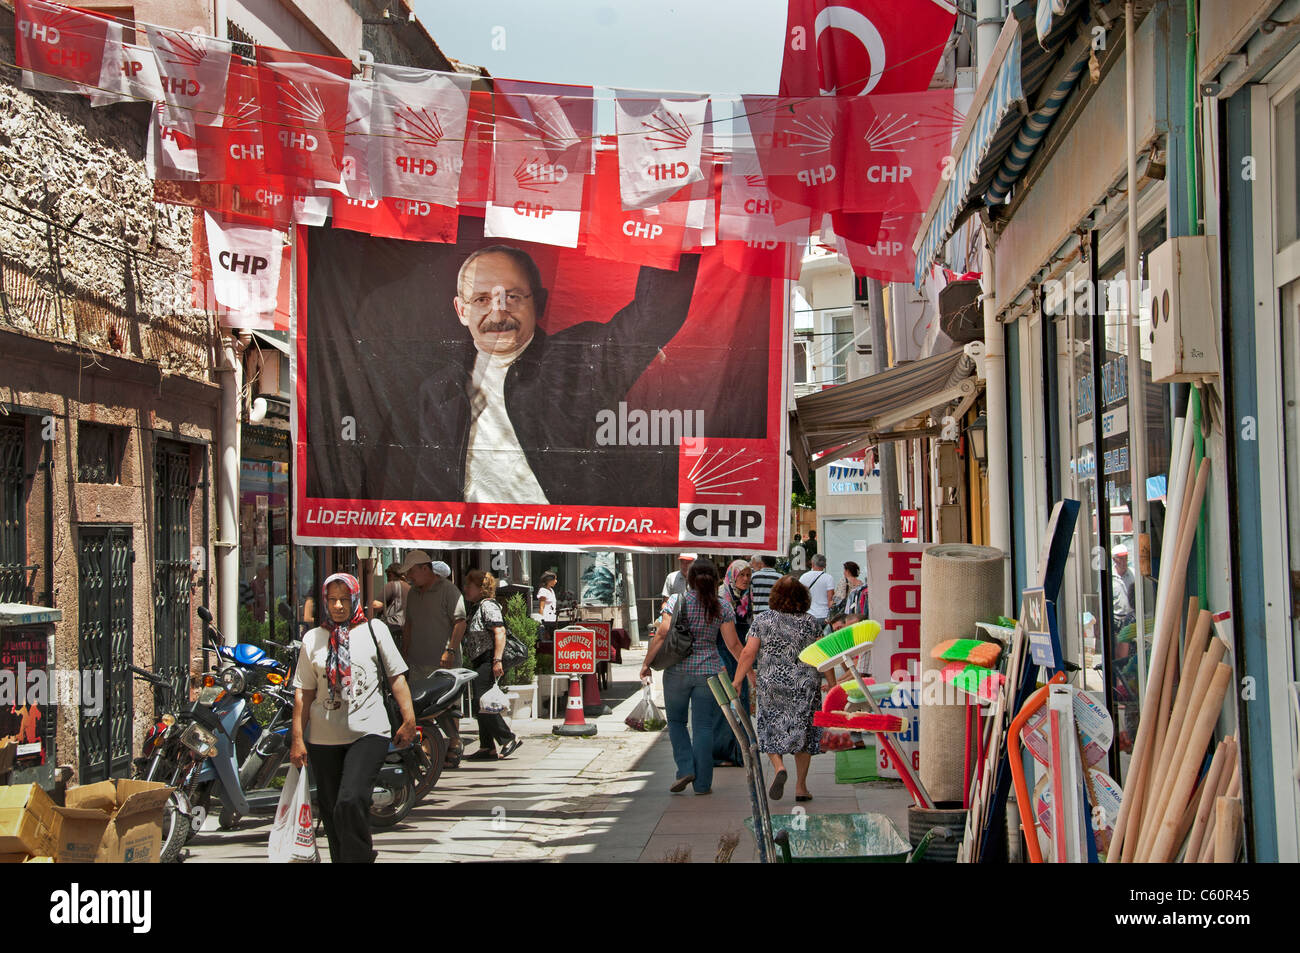 Vieille ville Ayavalik Bazar marché turc Turquie sondage Sondages Banque D'Images